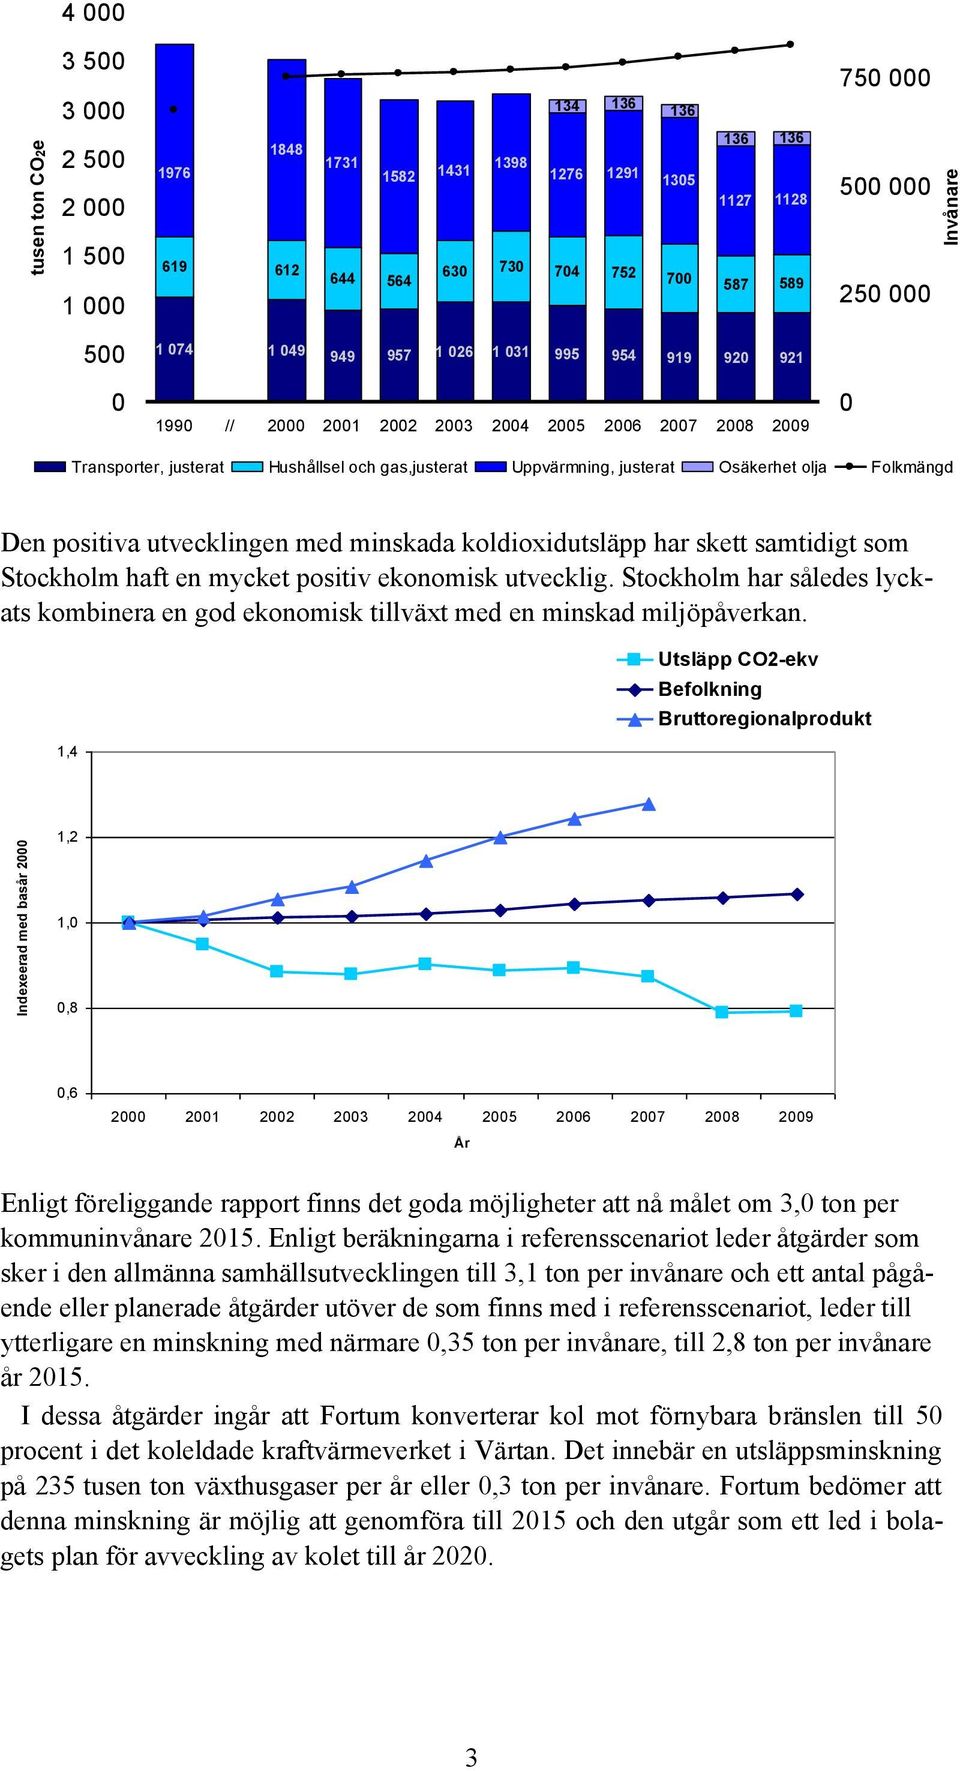 minskada koldioxidutsläpp har skett samtidigt som Stockholm haft en mycket positiv ekonomisk utvecklig. Stockholm har således lyckats kombinera en god ekonomisk tillväxt med en minskad miljöpåverkan.